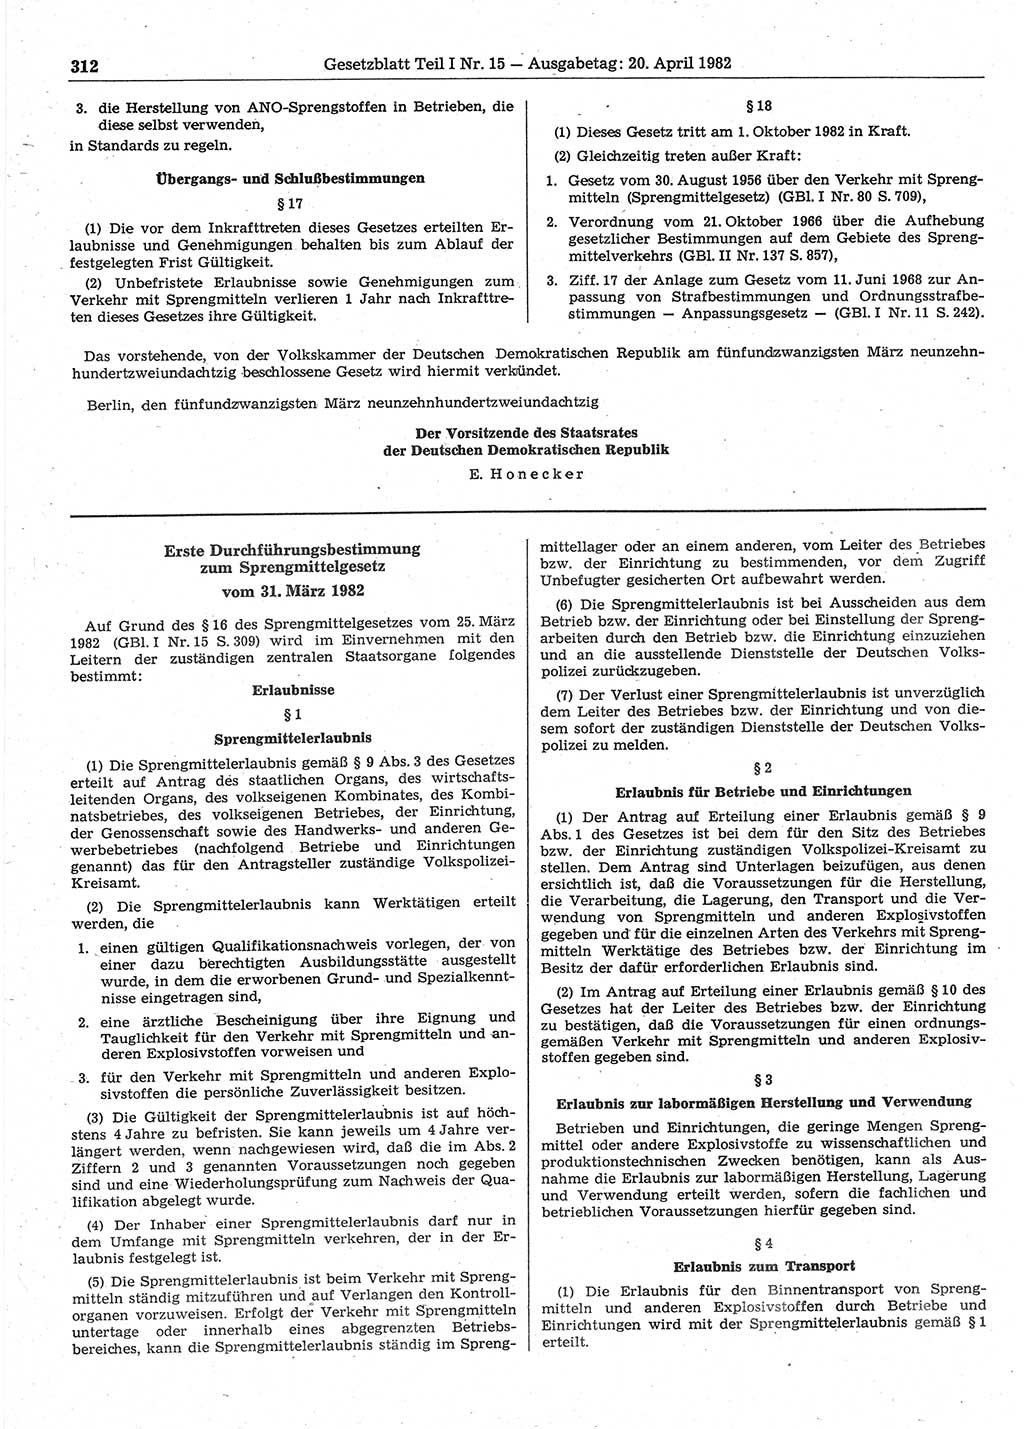 Gesetzblatt (GBl.) der Deutschen Demokratischen Republik (DDR) Teil Ⅰ 1982, Seite 312 (GBl. DDR Ⅰ 1982, S. 312)